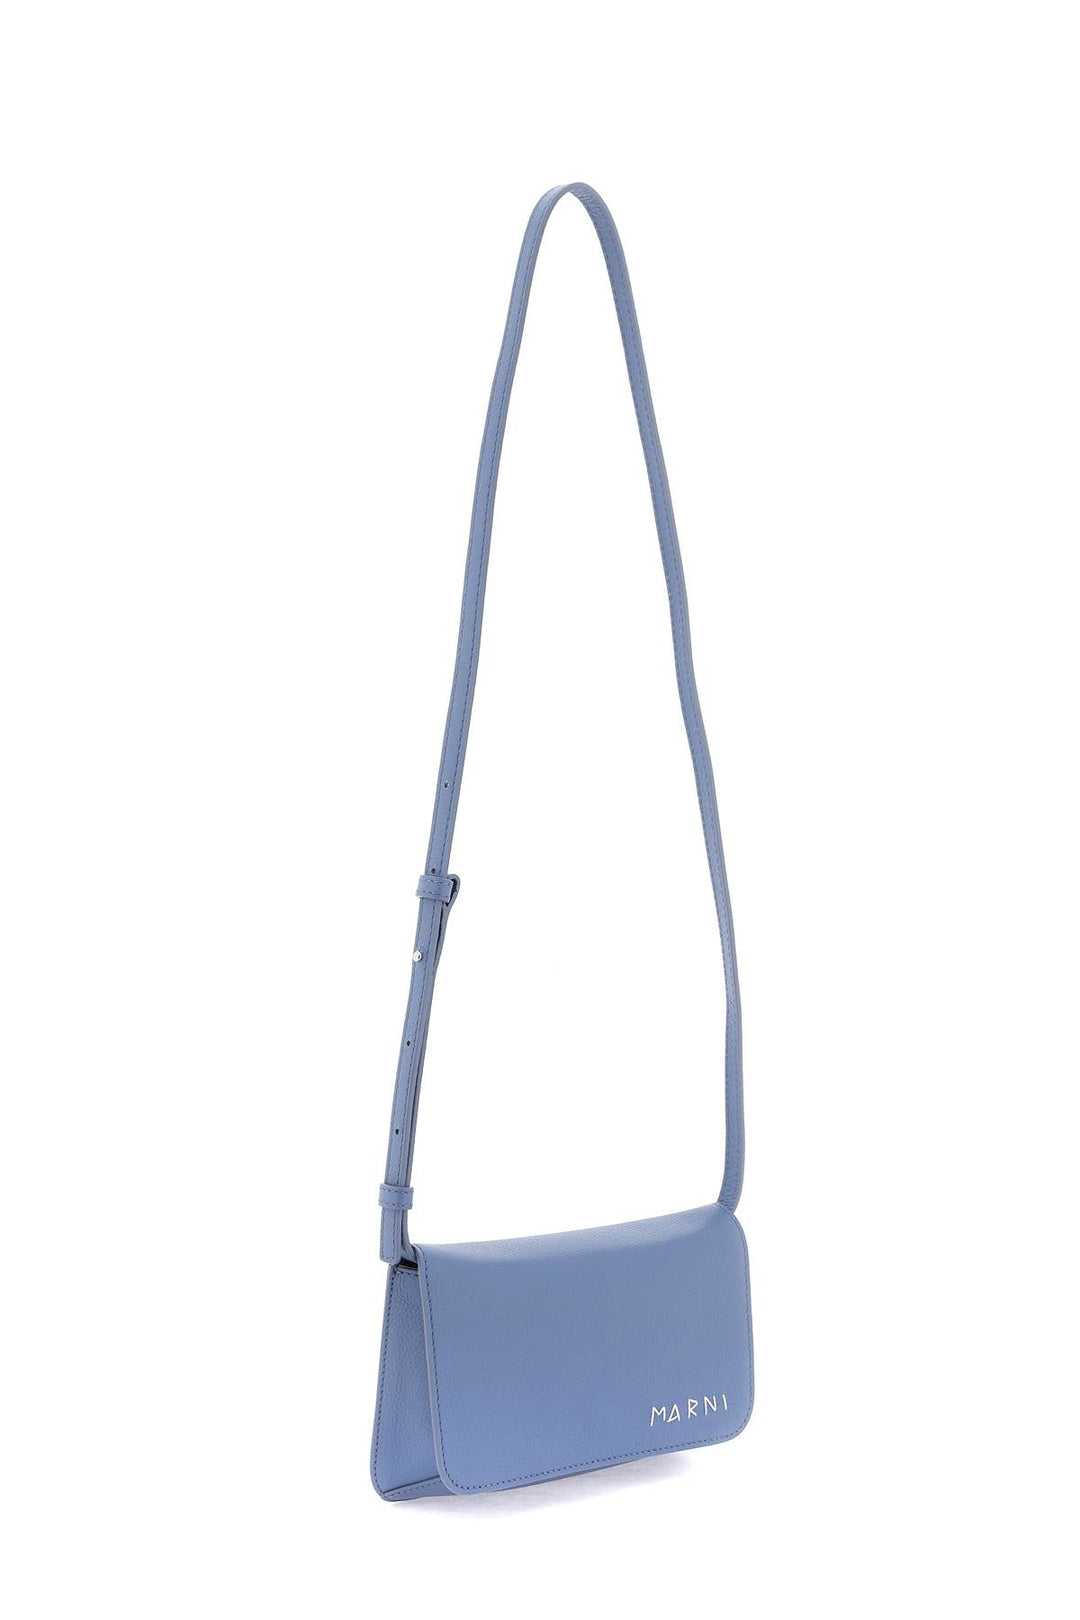 Marni Flap Trunk Shoulder Bag With   Light Blue